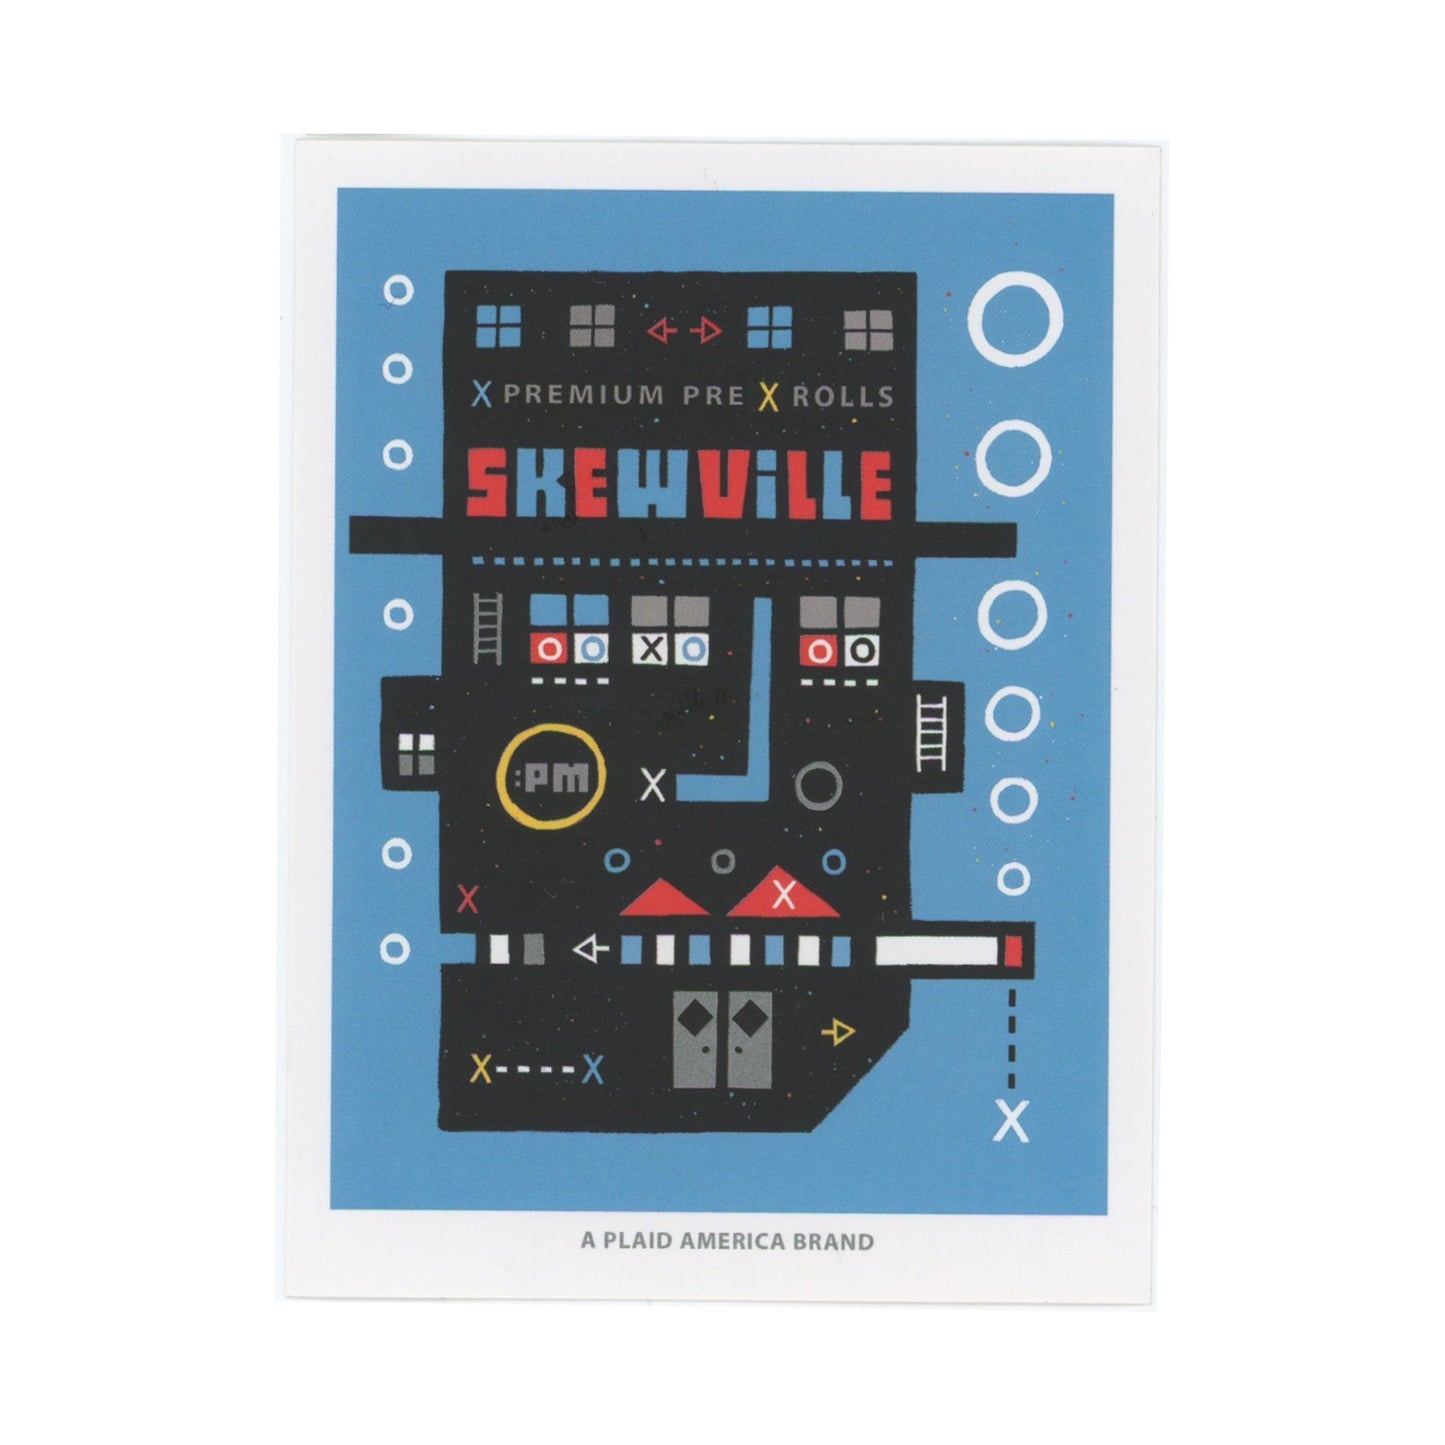 SKEWVILLE PREMIUM PRE-ROLL BLUE Sticker